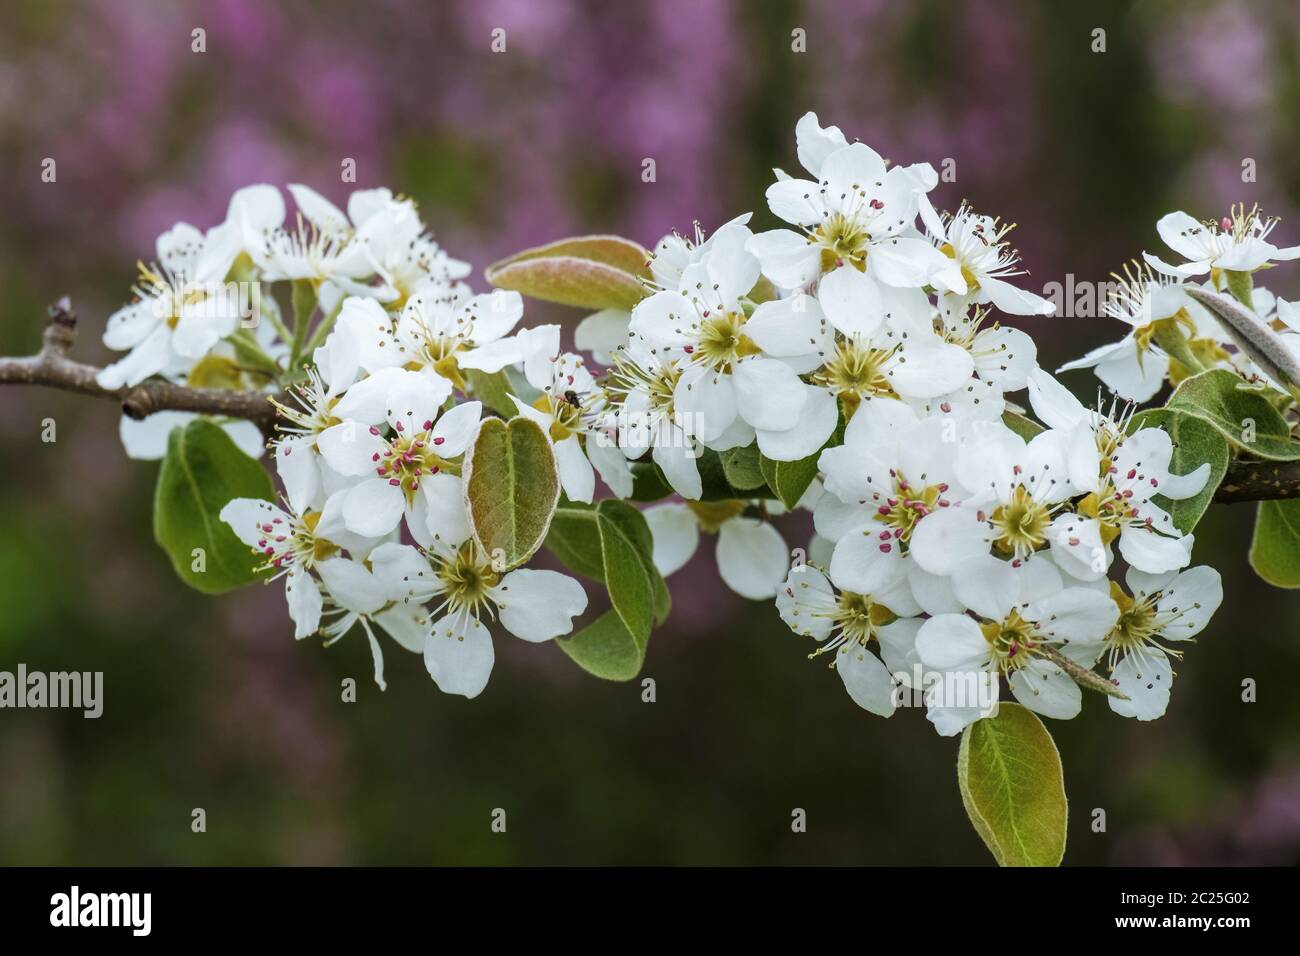 Pear tree blossom (Pyrus) Stock Photo